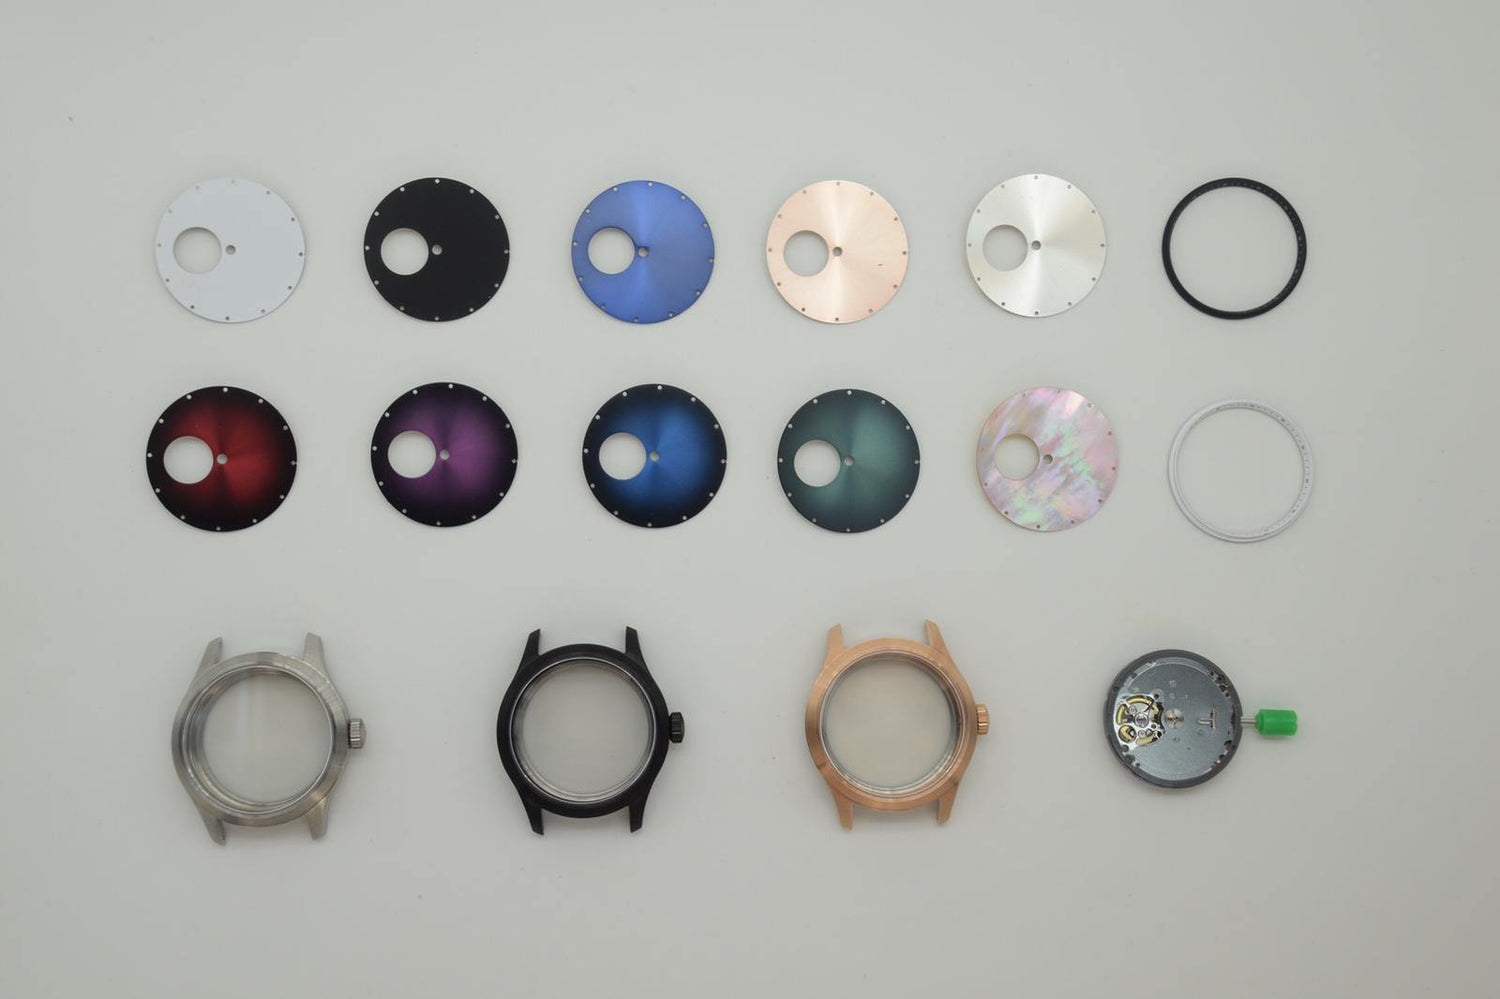 【香港店】日本自動機械錶機芯 - 刻上您的名字DIY手錶工作坊 - Watchmake Factory